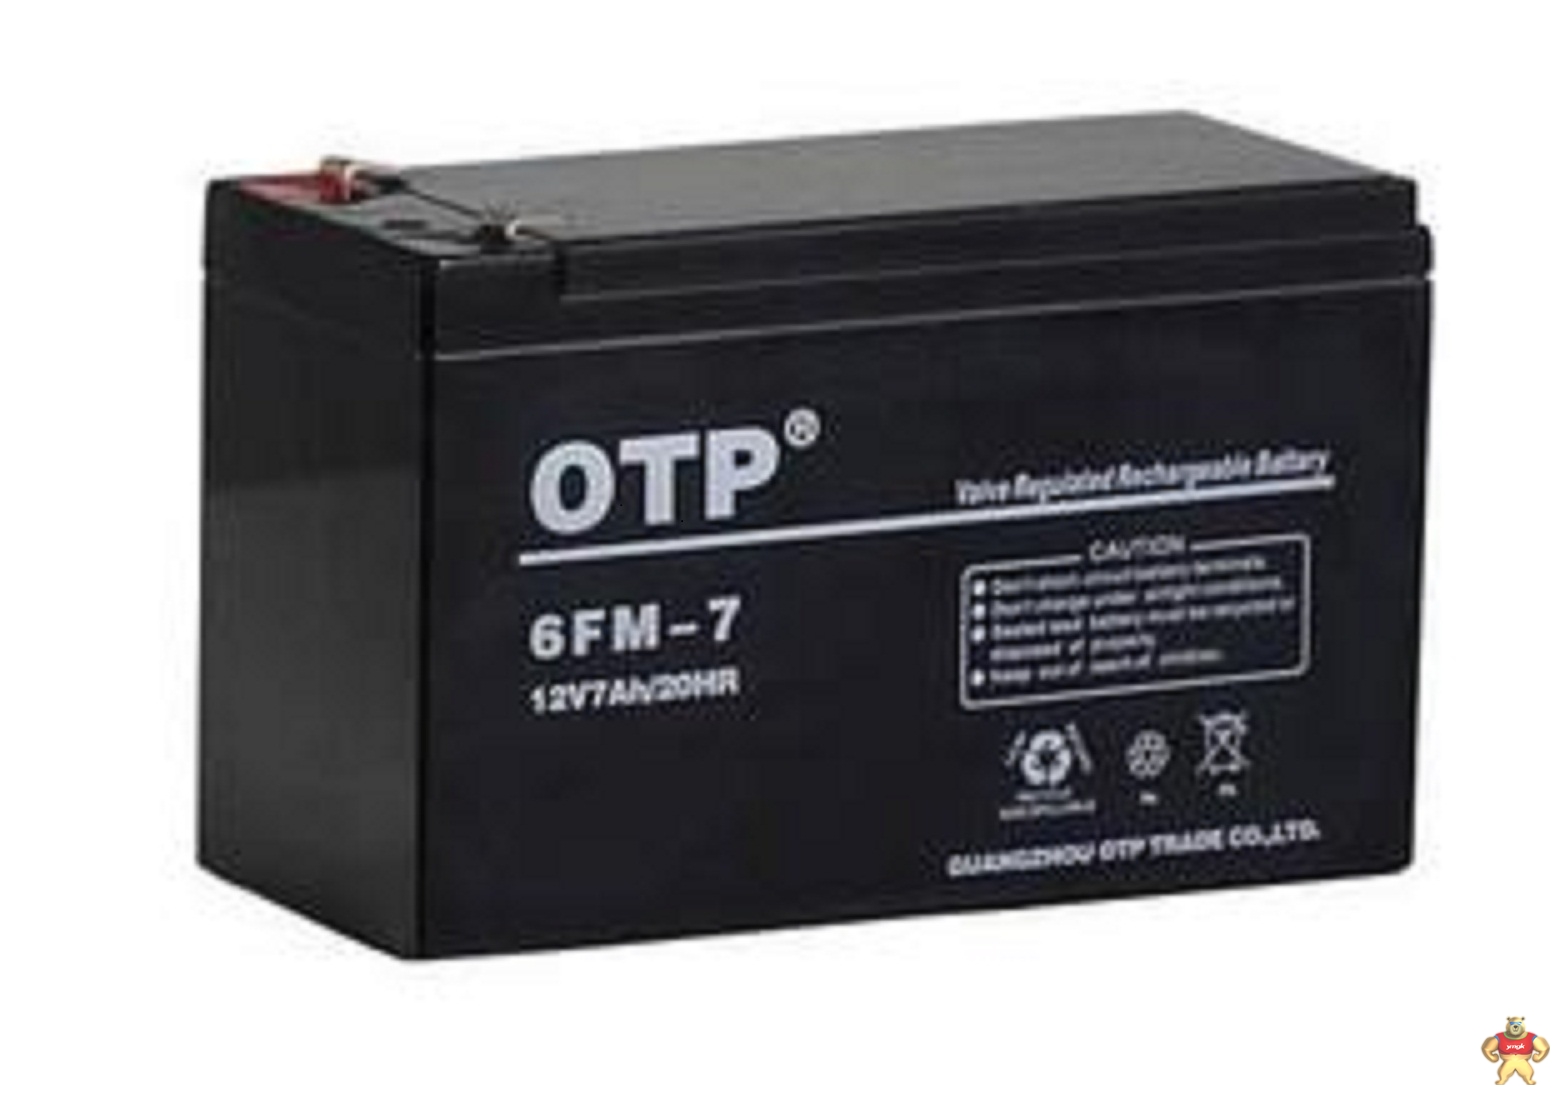 工业蓄电池OTP6FM-24免维护蓄电池价格 6FM-24,欧托匹,OTP,ups电池,12V24AH